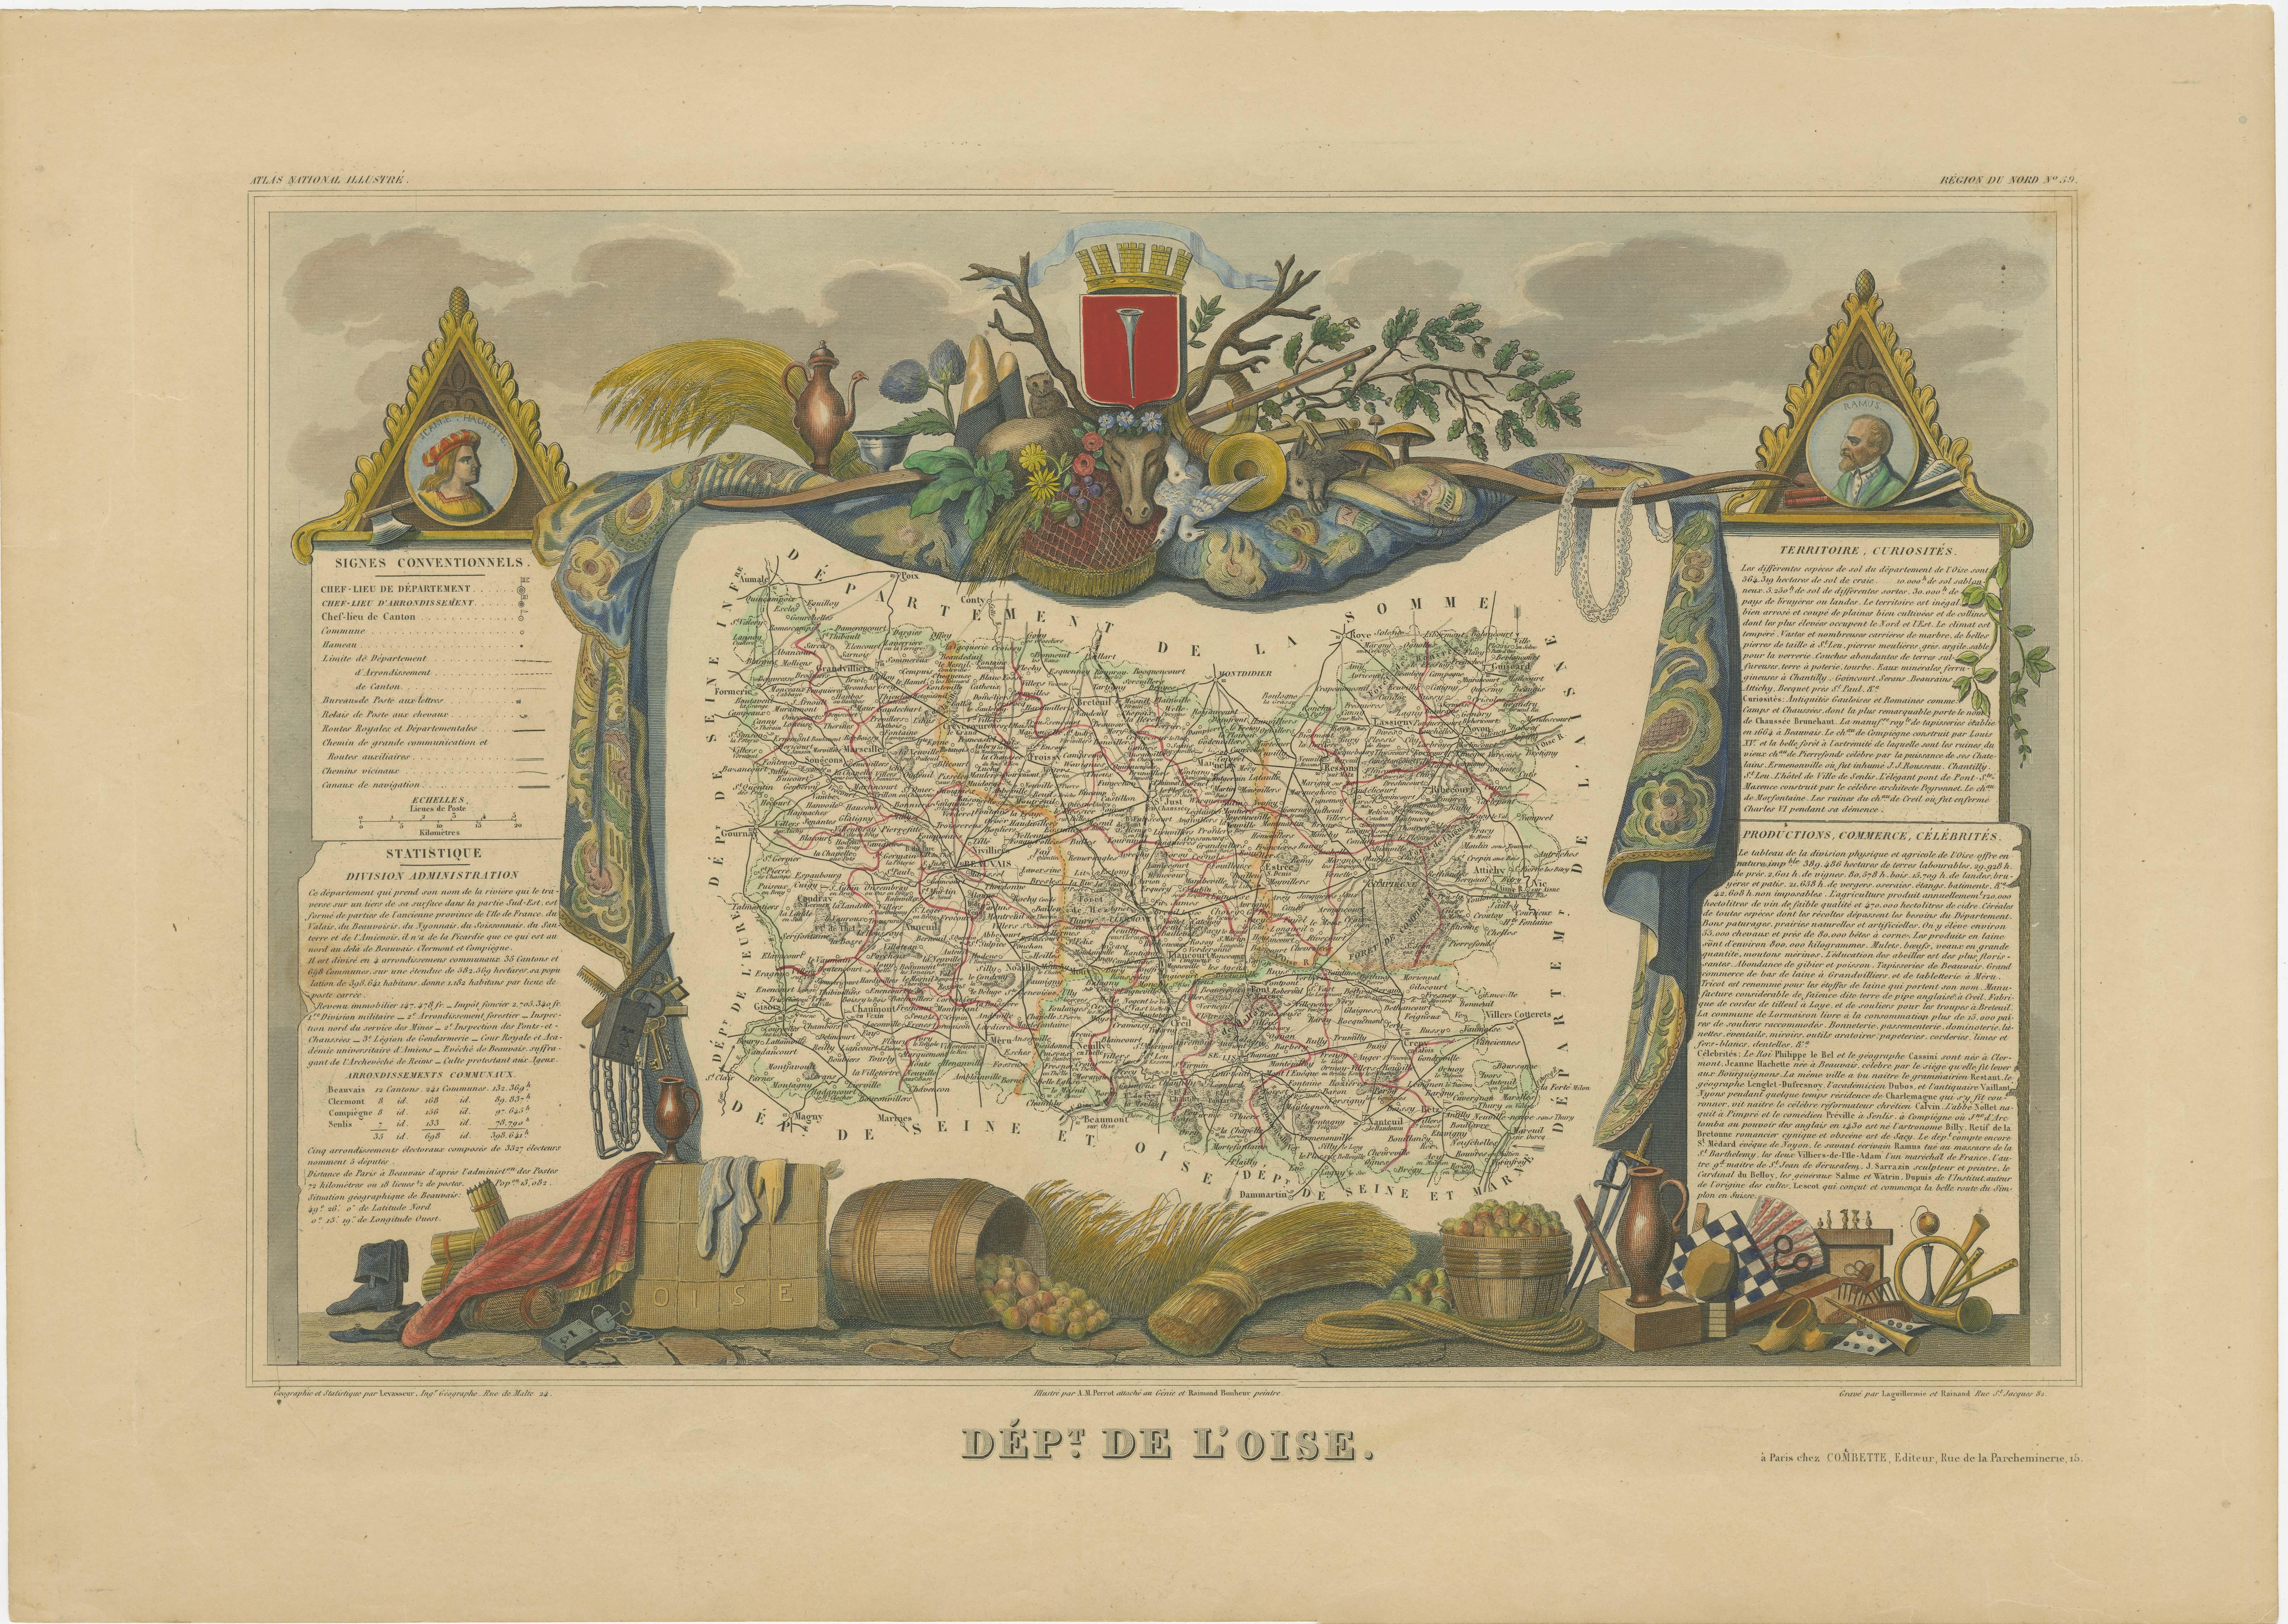 Antike Karte mit dem Titel 'Dept. de l'Oise'. Alte Karte des französischen Departements Oise, Frankreich. Die Karte selbst ist von aufwendigen dekorativen Gravuren umgeben, die sowohl die natürliche Schönheit als auch den Handelsreichtum des Landes